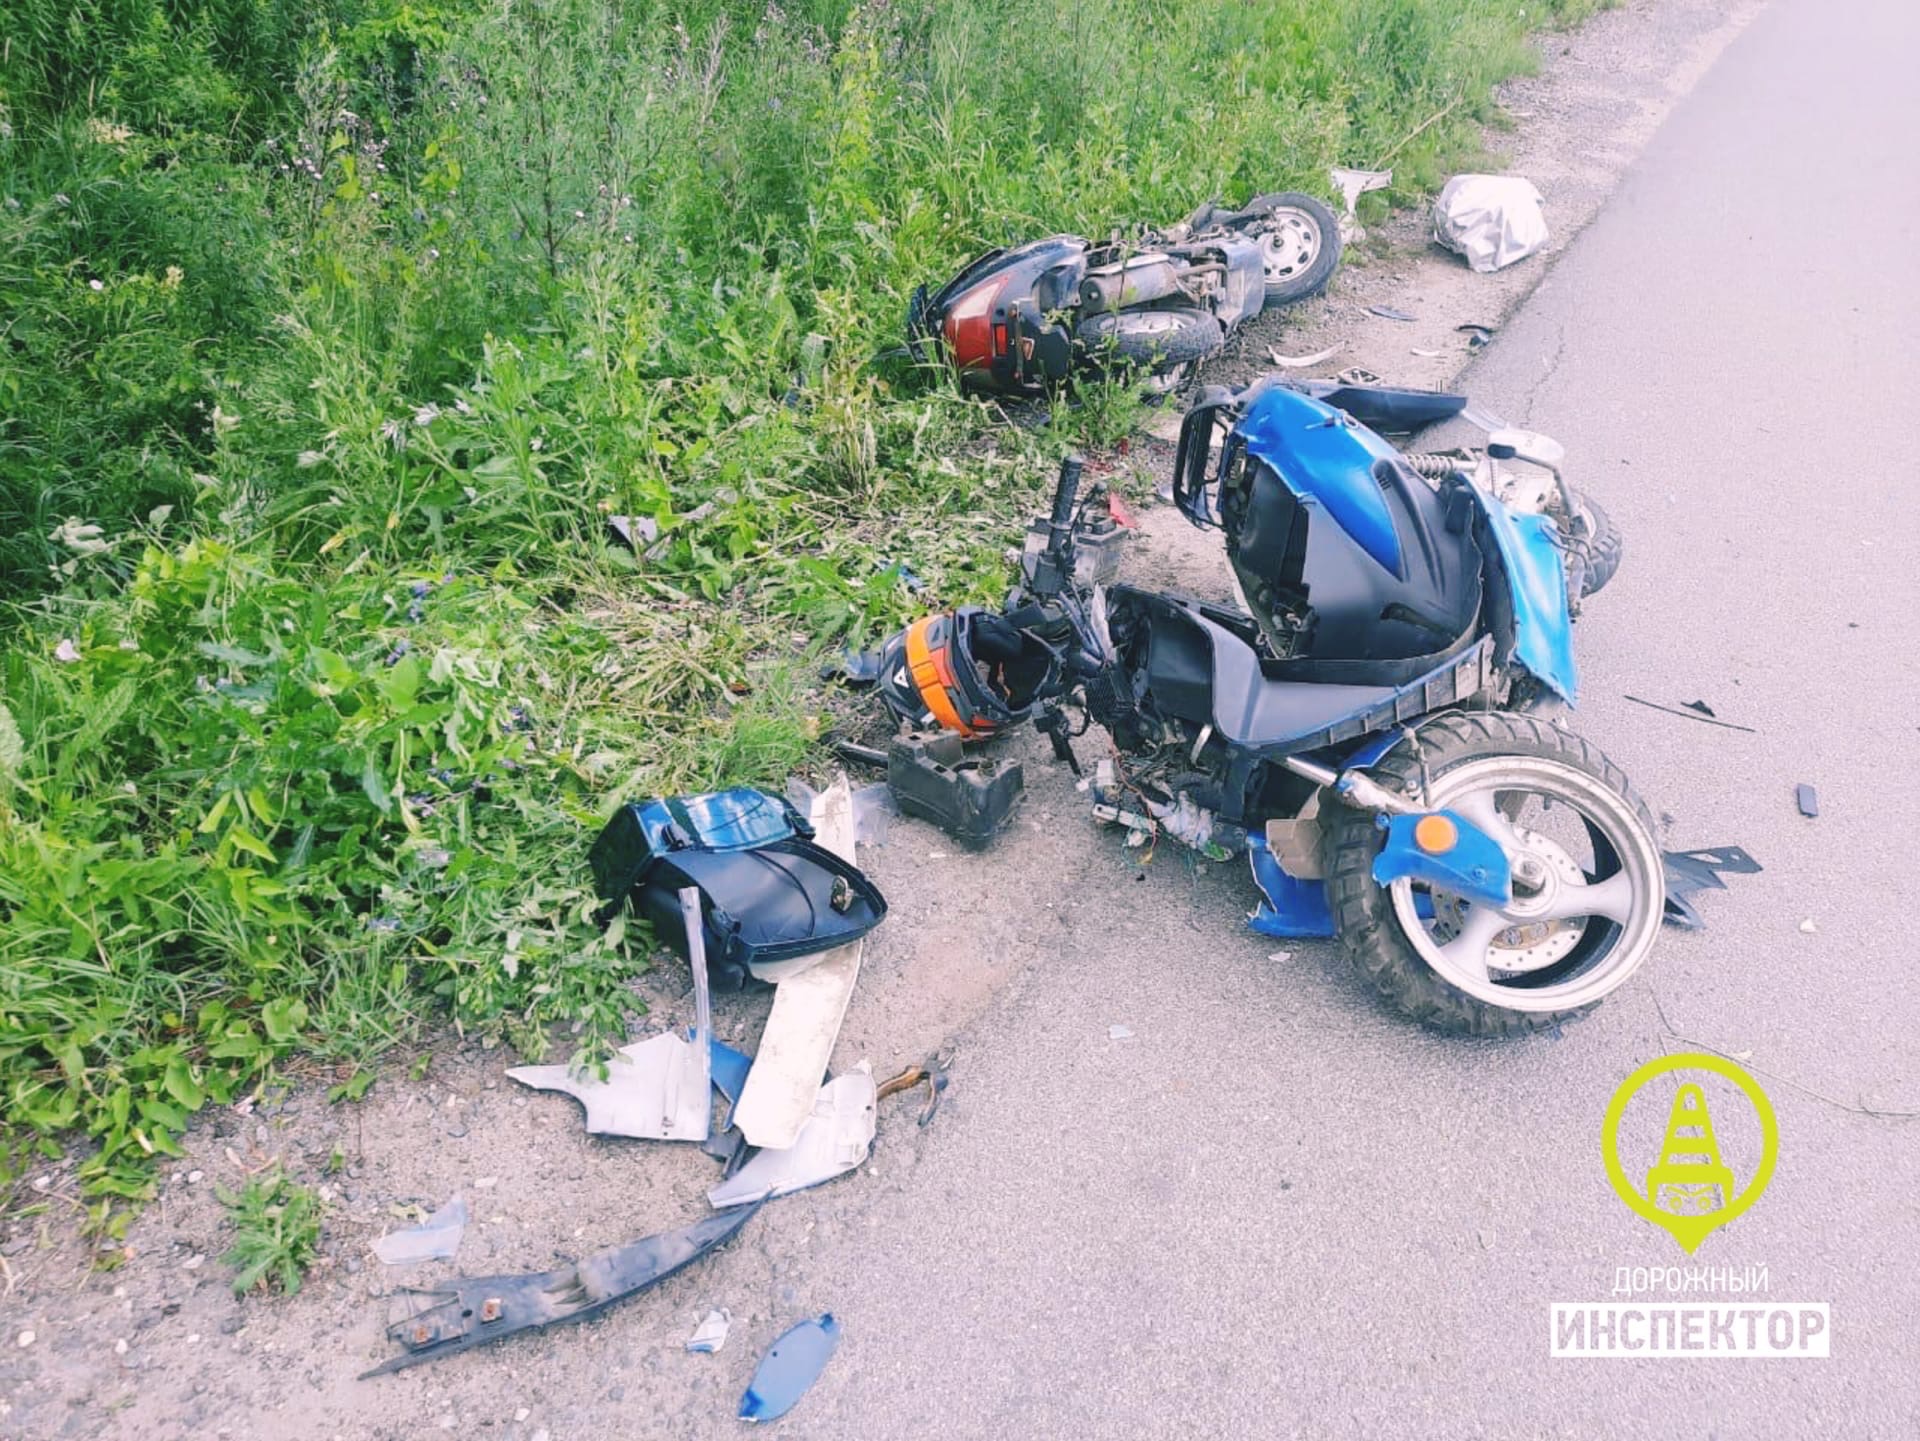 ✅ как обезопасить себя от аварийных ситуаций при езде на мотоцикле, активный образ жизни - craitbikes.ru